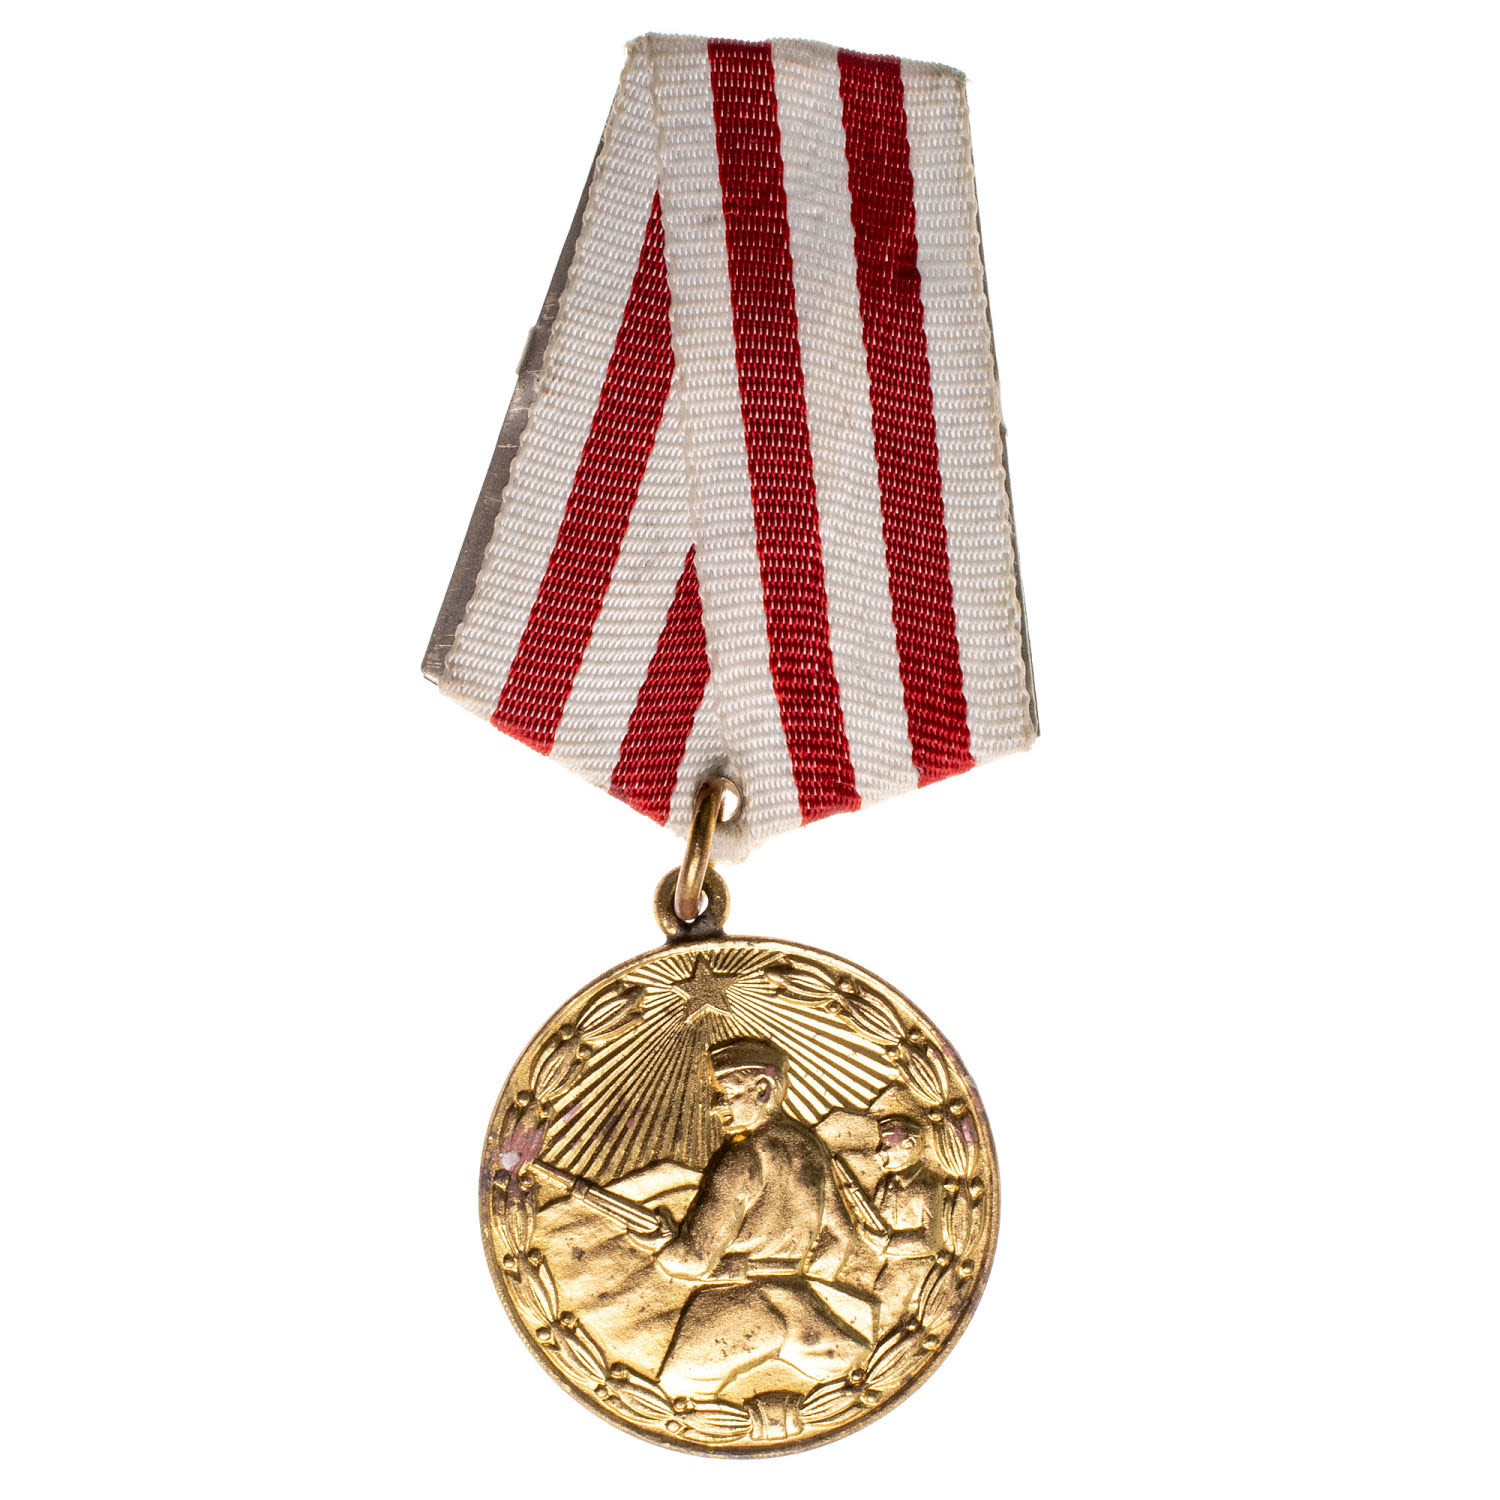 Албания (Народная Социалистическая Республика Албания 1946 - 1990 гг). Медаль "За Храбрость" (официальное название "Medal per Trimёri"). 